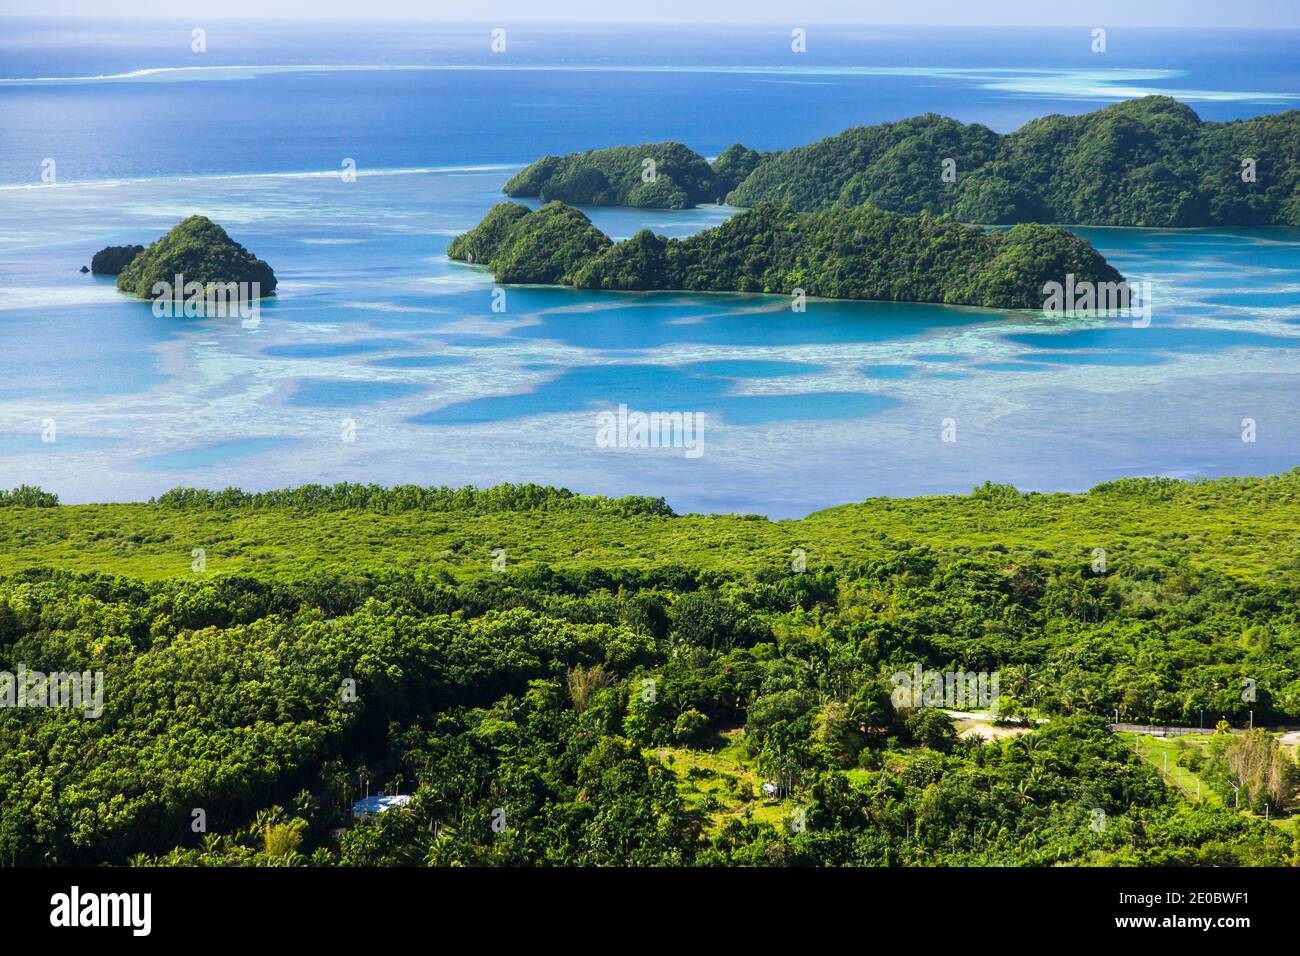 Vista aerea delle isole di roccia, isola di Babeldaob, zona meridionale vicino all'aeroporto internazionale di Palau, isola di Babeldaob, Palau, Micronesia, Oceania Foto Stock